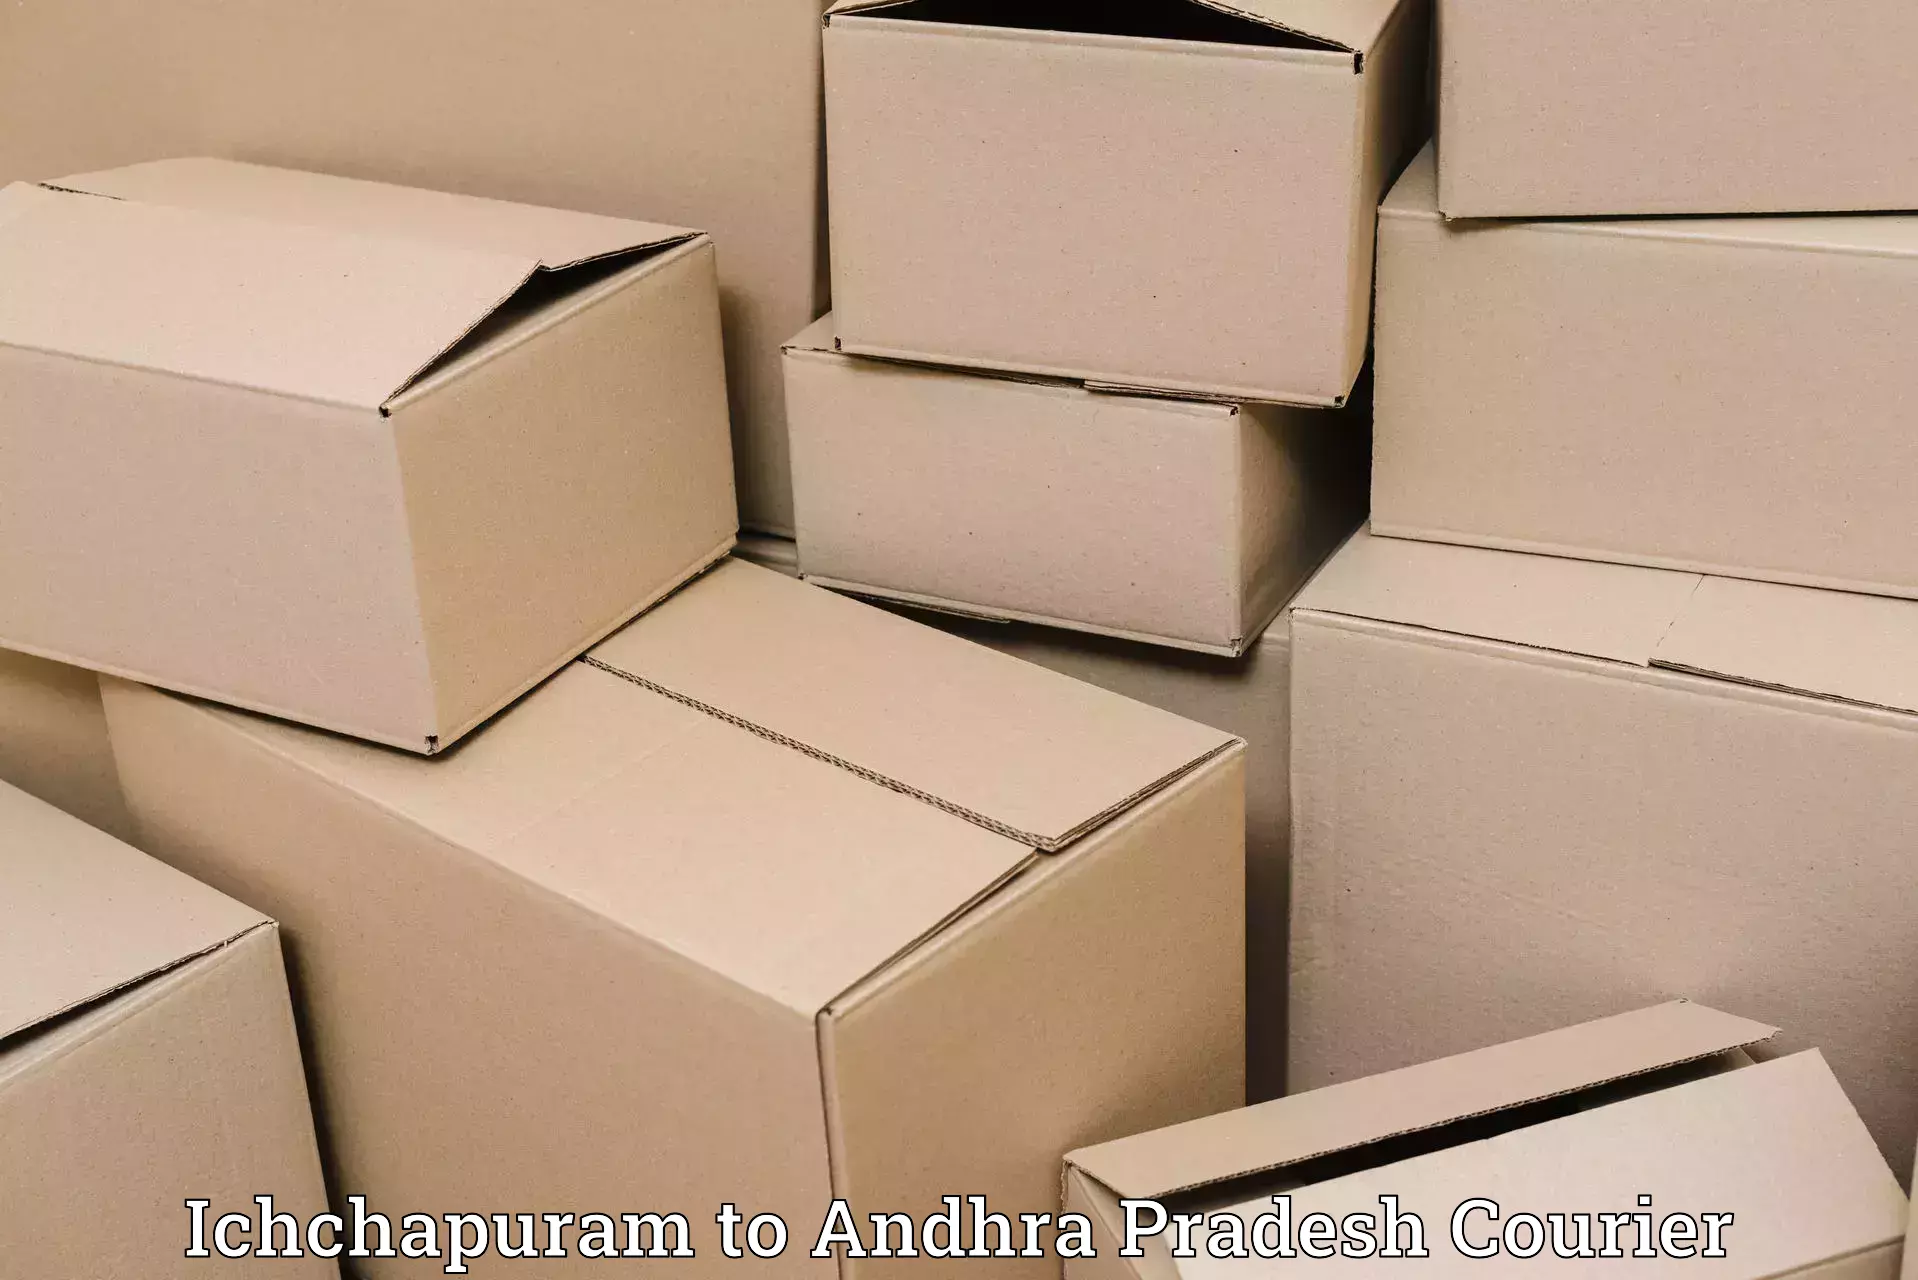 Express logistics providers Ichchapuram to Madakasira